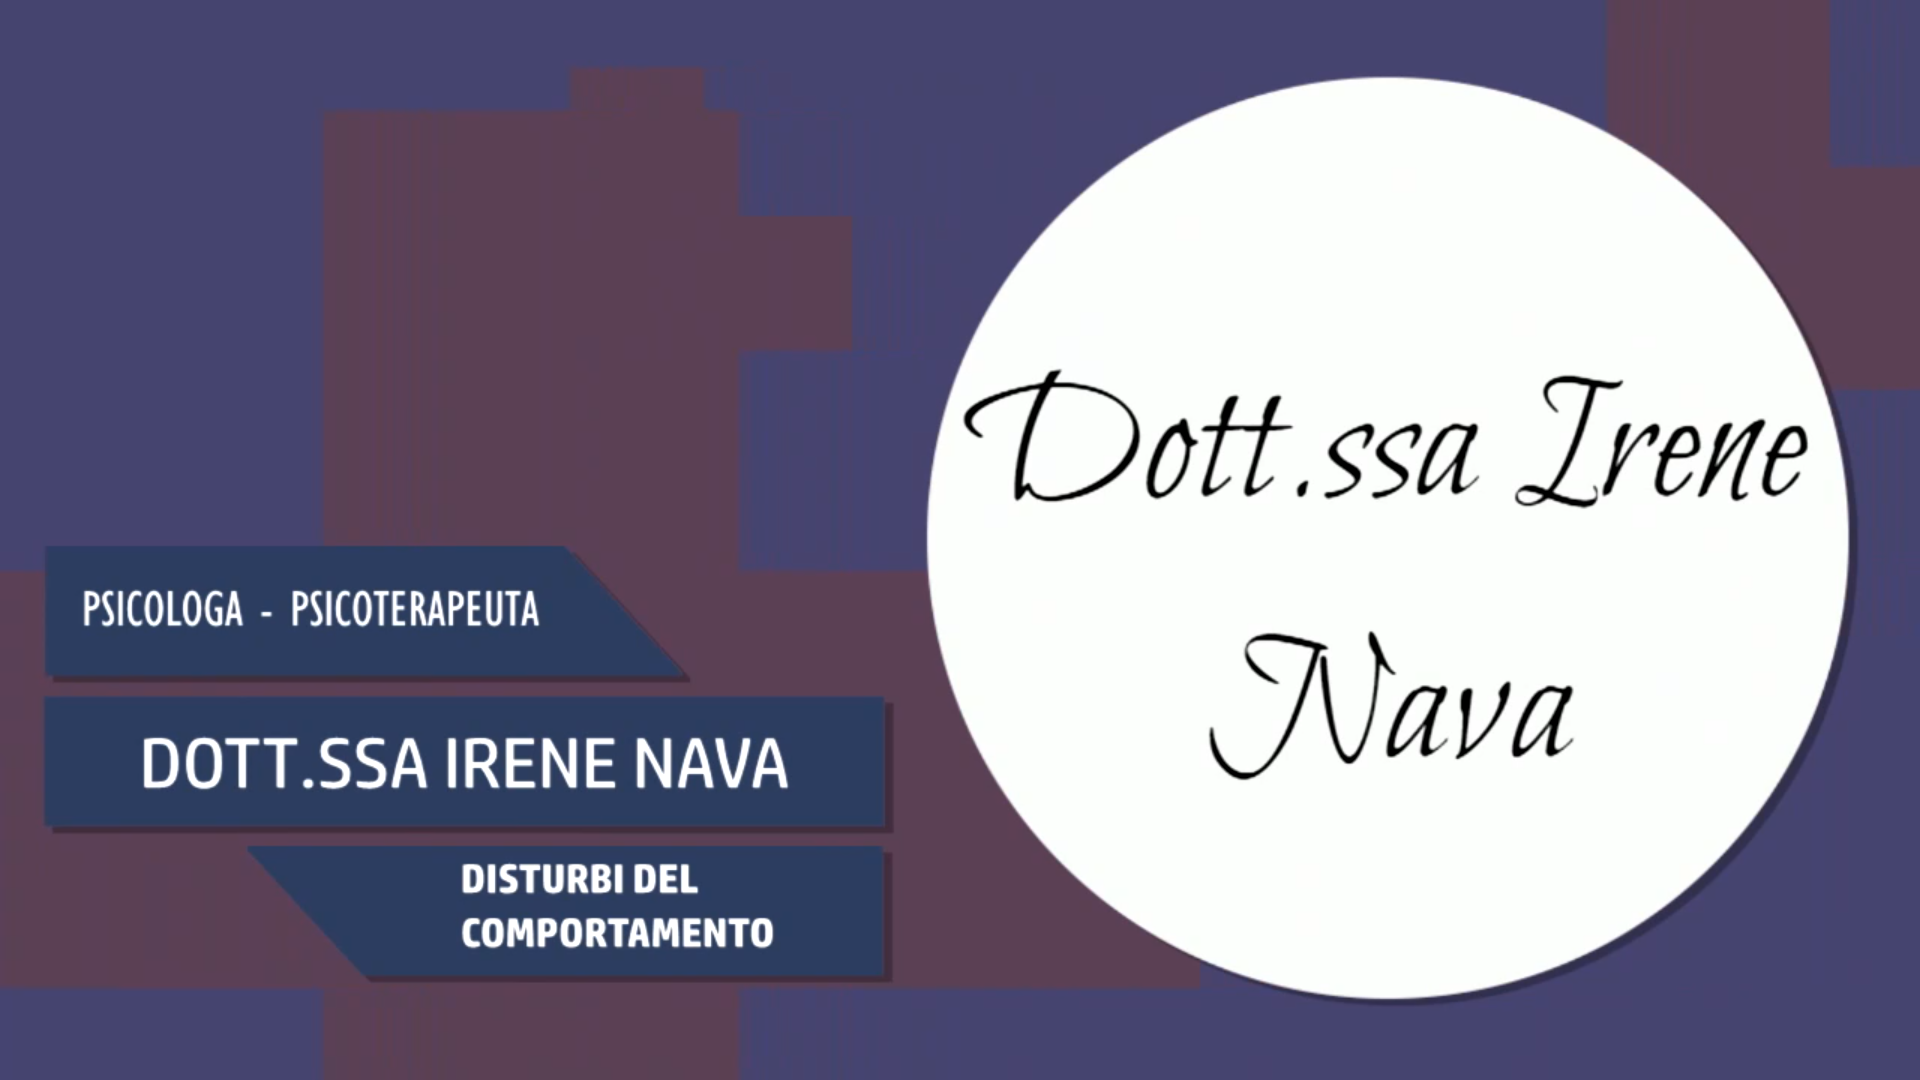 Intervista alla Dott.ssa Irene Nava – Disturbi del comportamento